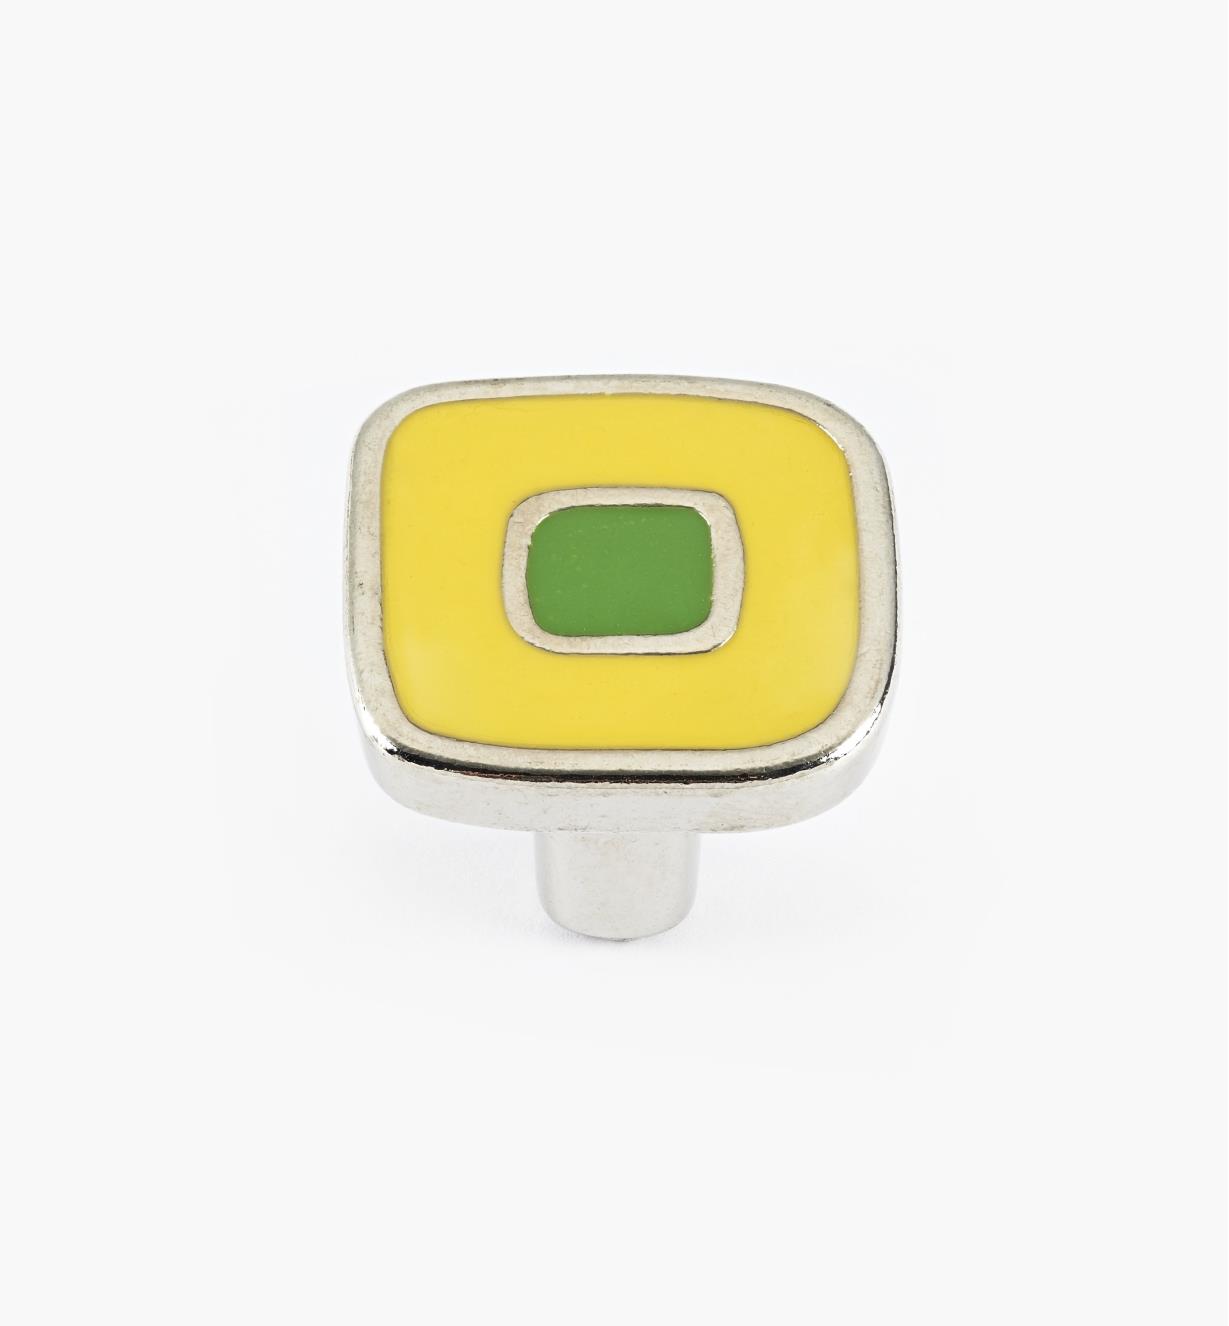 01X4360 - Petit bouton émaillé, jaune et vert, 30 mm